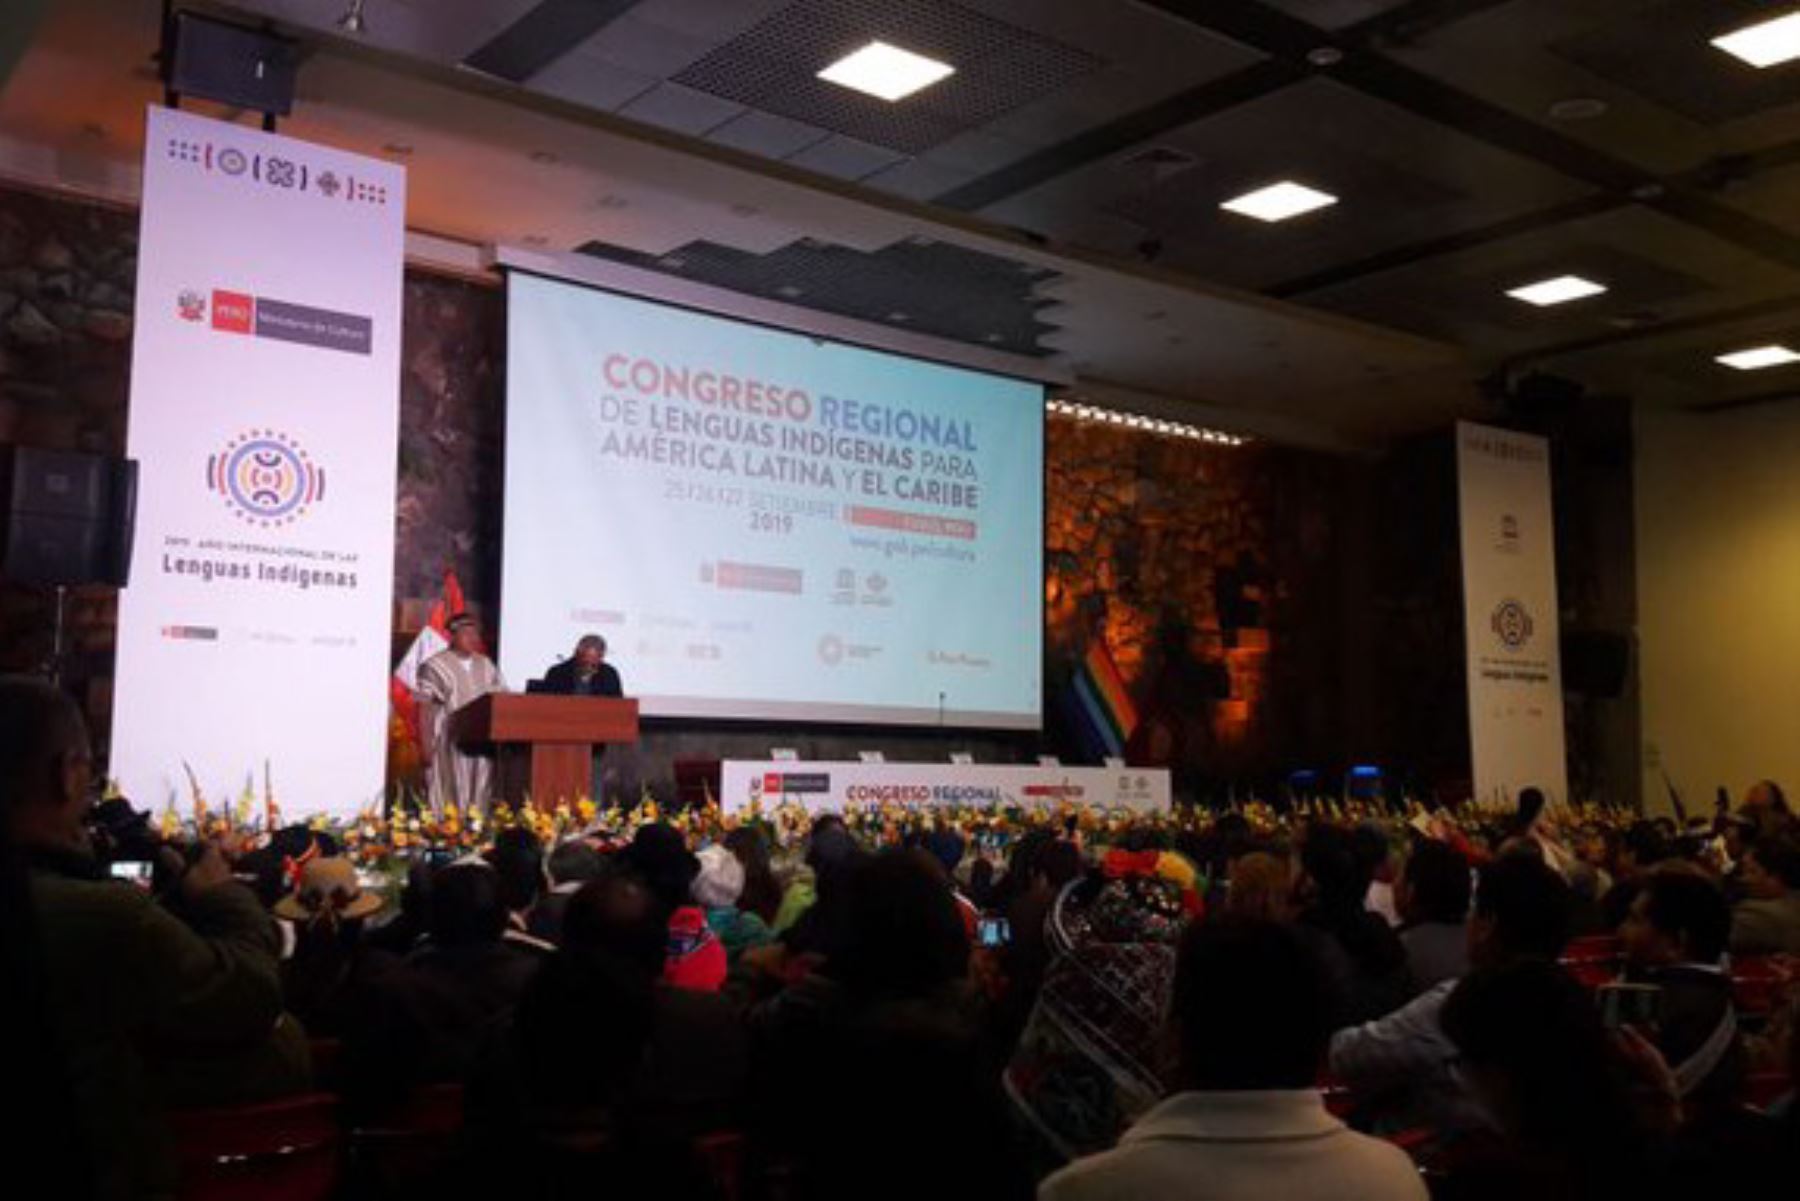 Congreso Regional de Lenguas Indígenas para América Latina y el Caribe 2019, que se realiza en la ciudad de Cusco